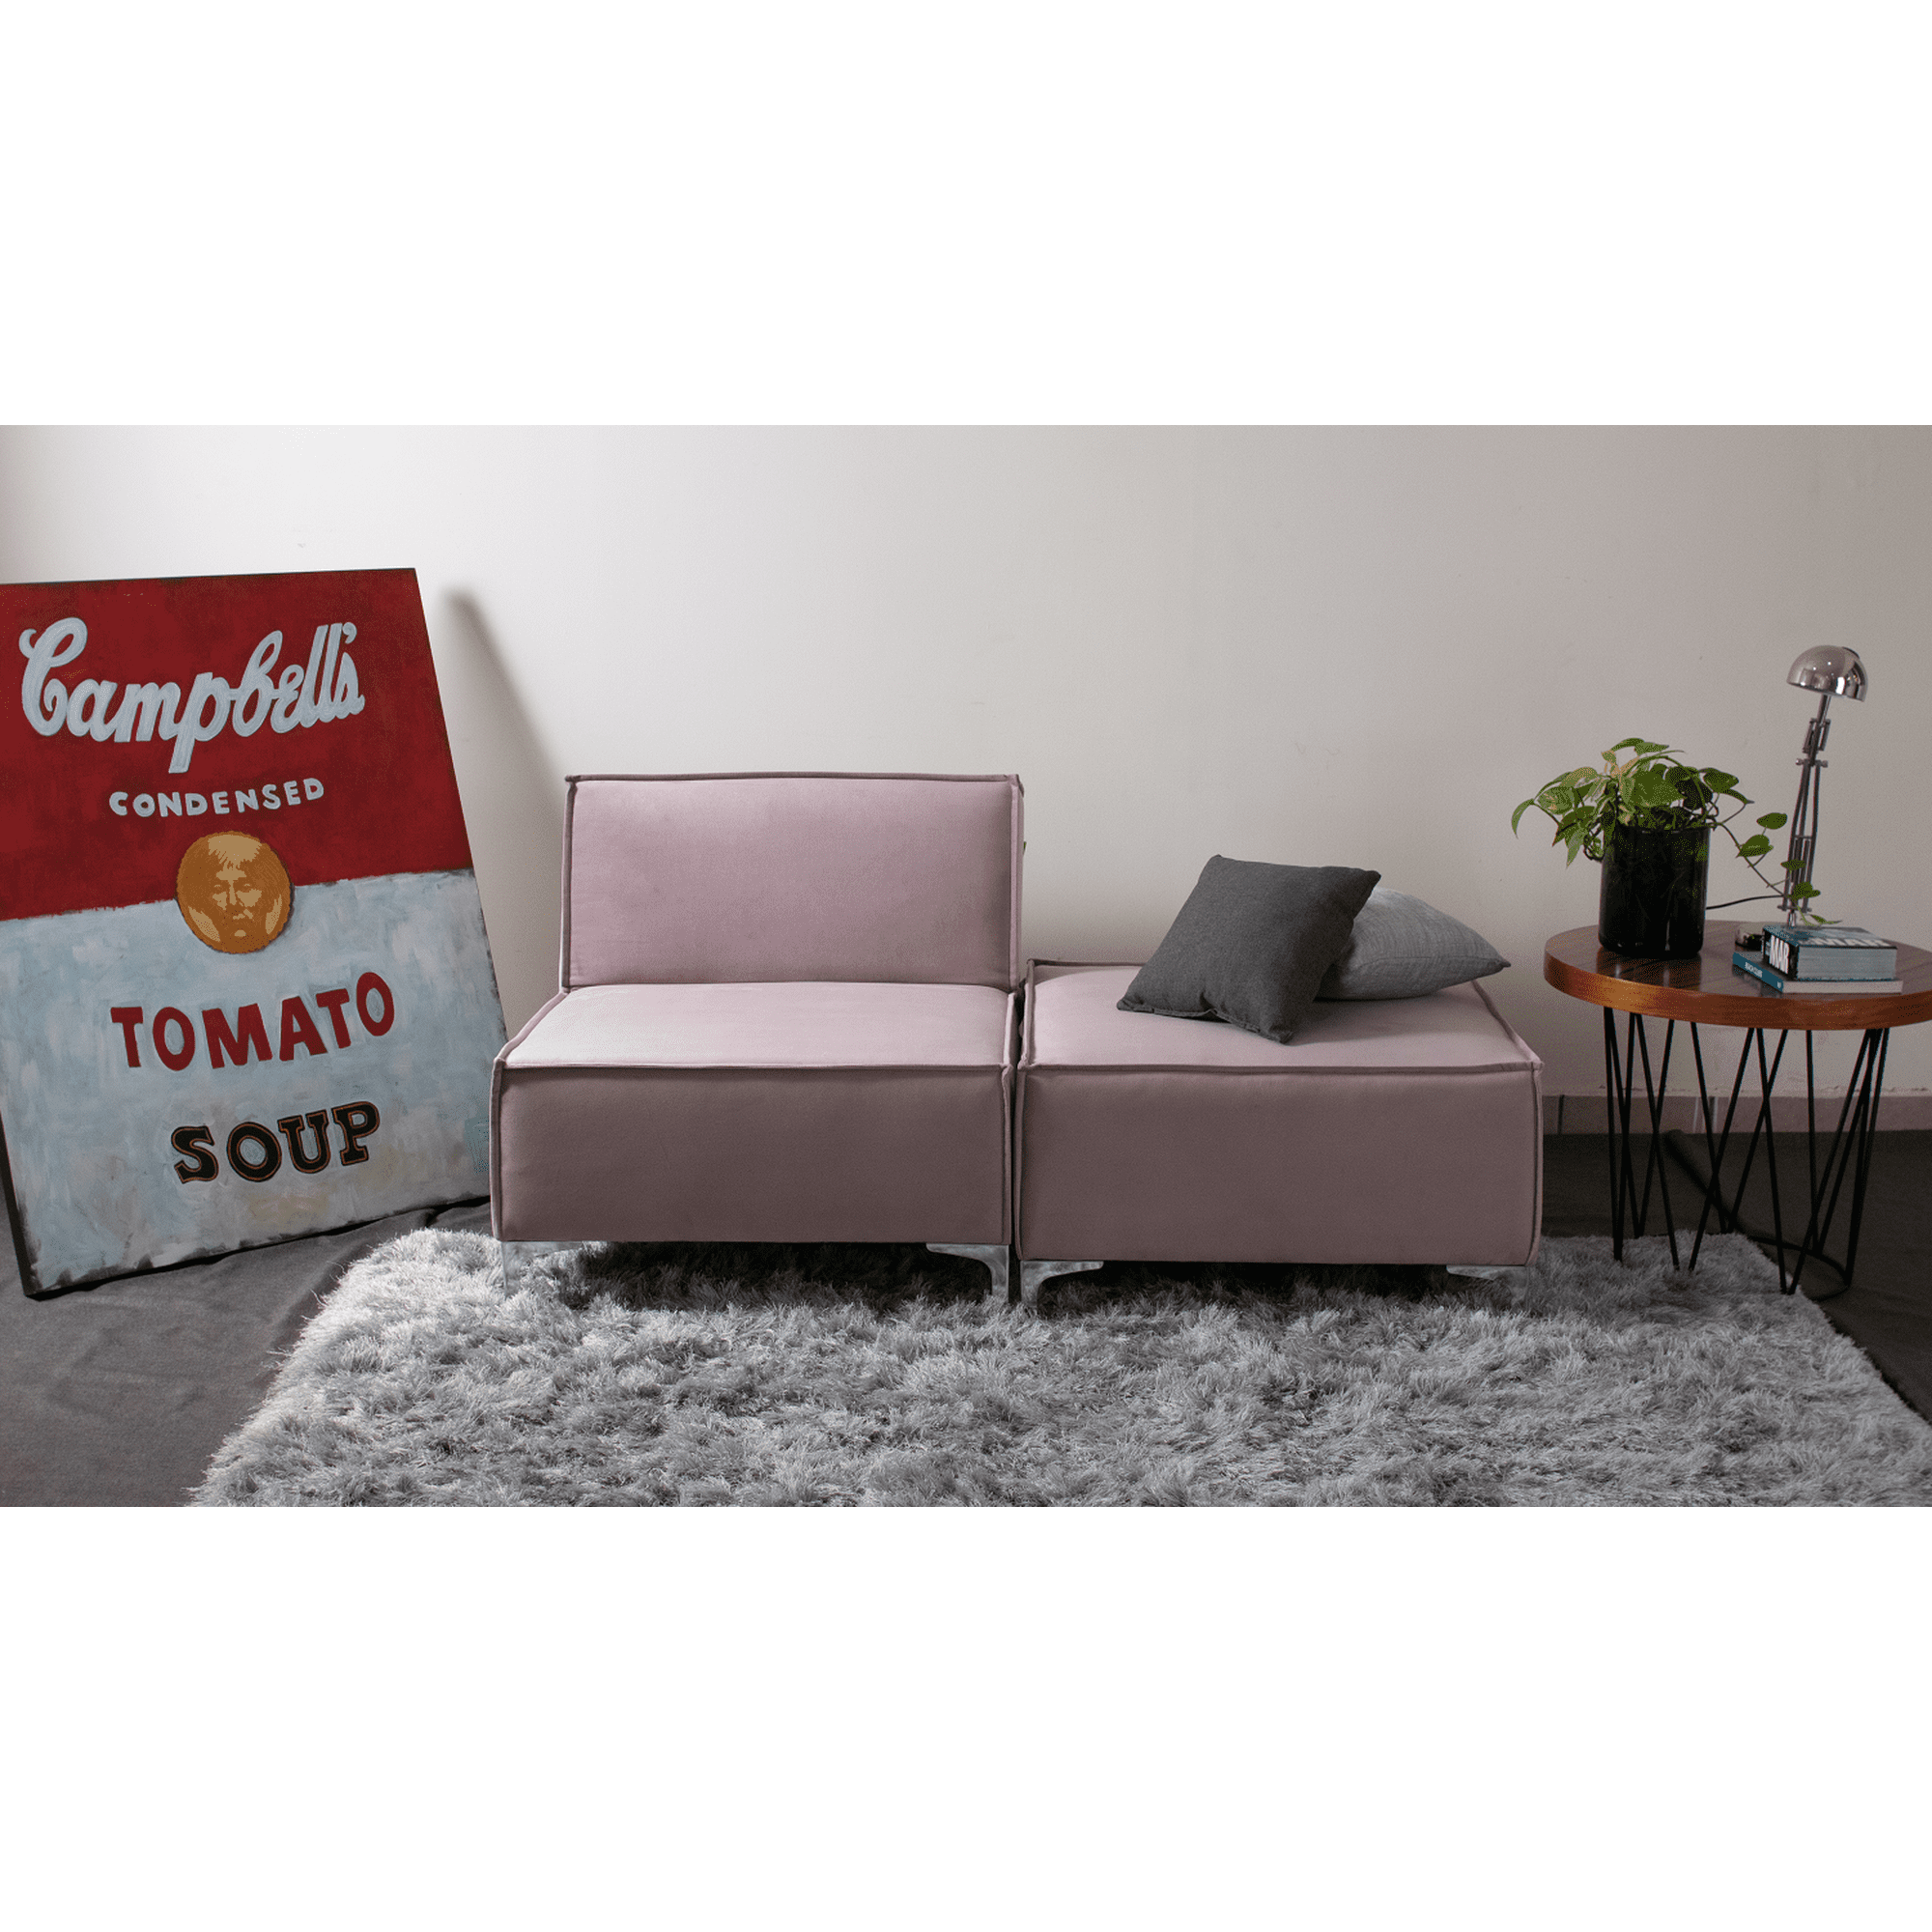 Sofa cama plegable Matrimonial en tacto piel color chocolate con portavasos  Mobydec Sofa cama Element/ Estilo minimalista/sofa cama plegable